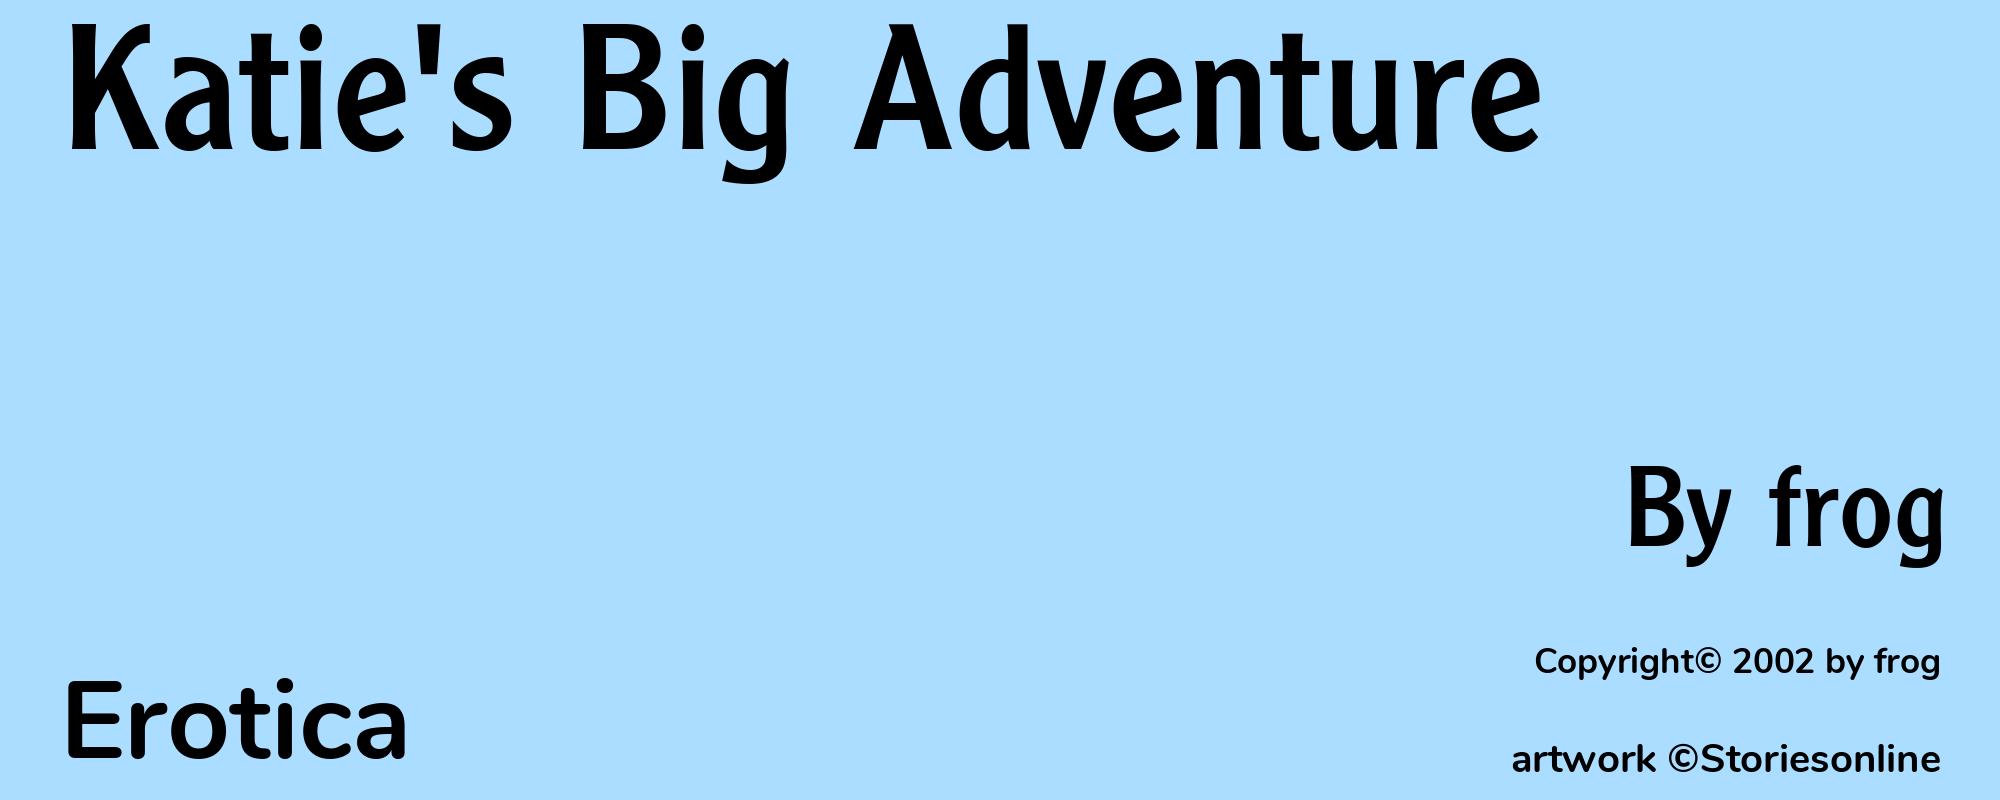 Katie's Big Adventure - Cover